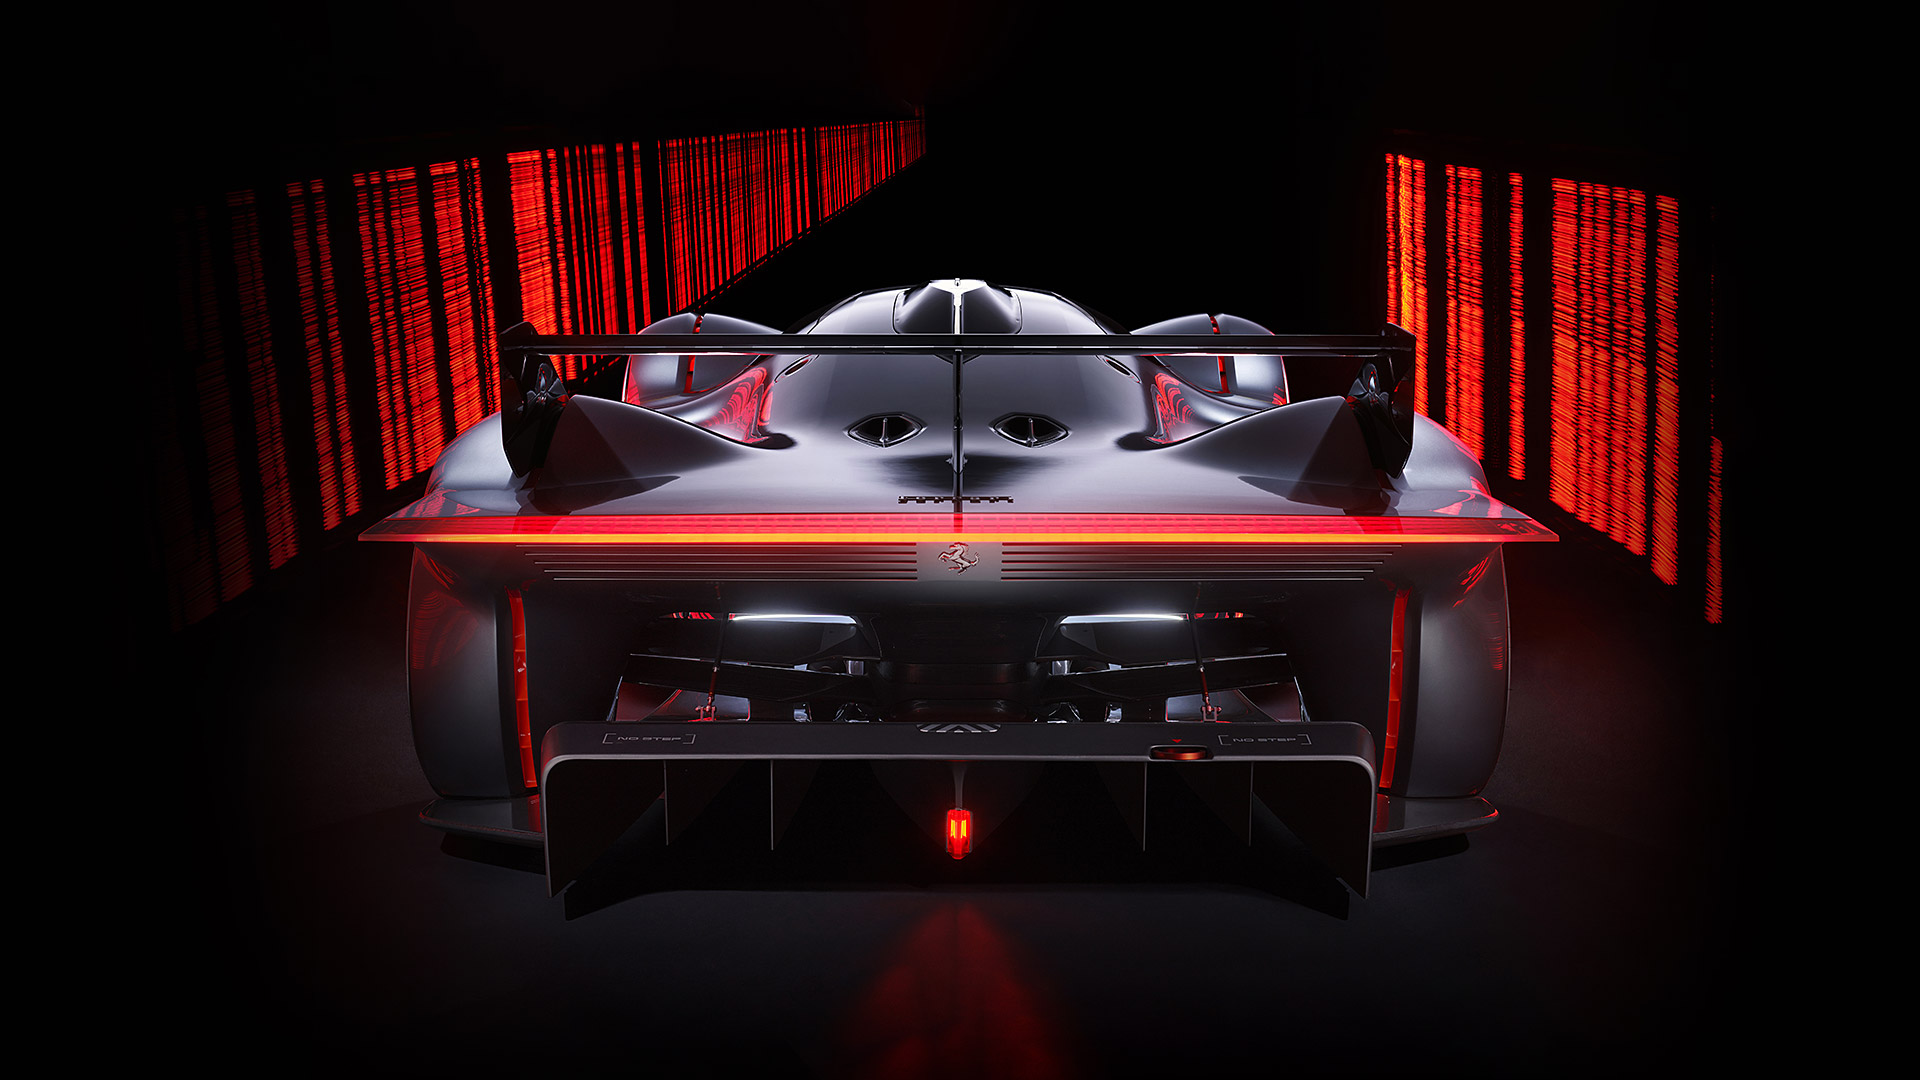  2022 Ferrari Vision Gran Turismo Concept Wallpaper.